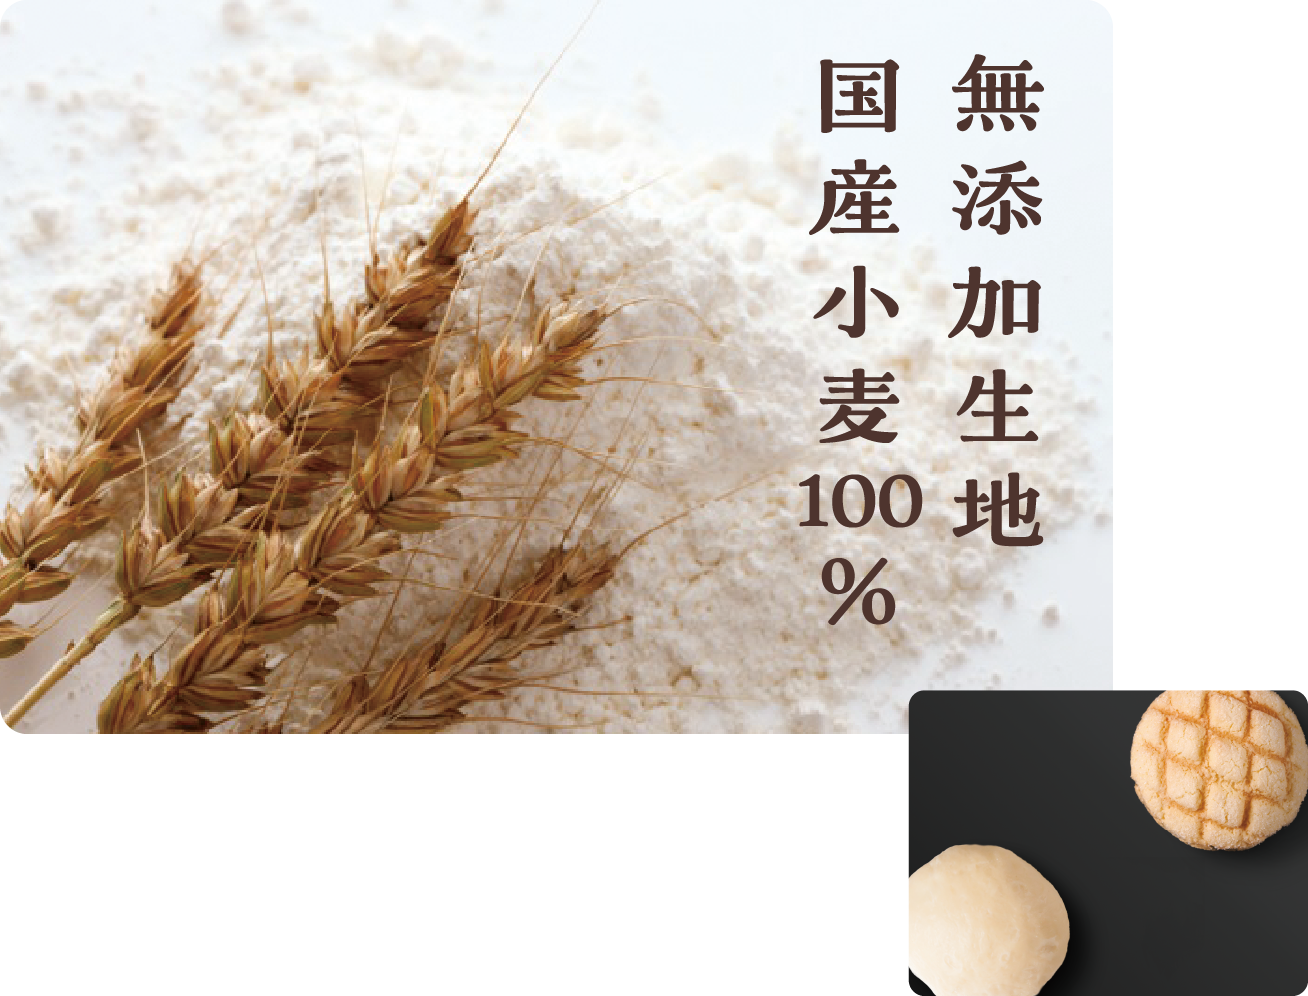 無添加生地国産小麦100%